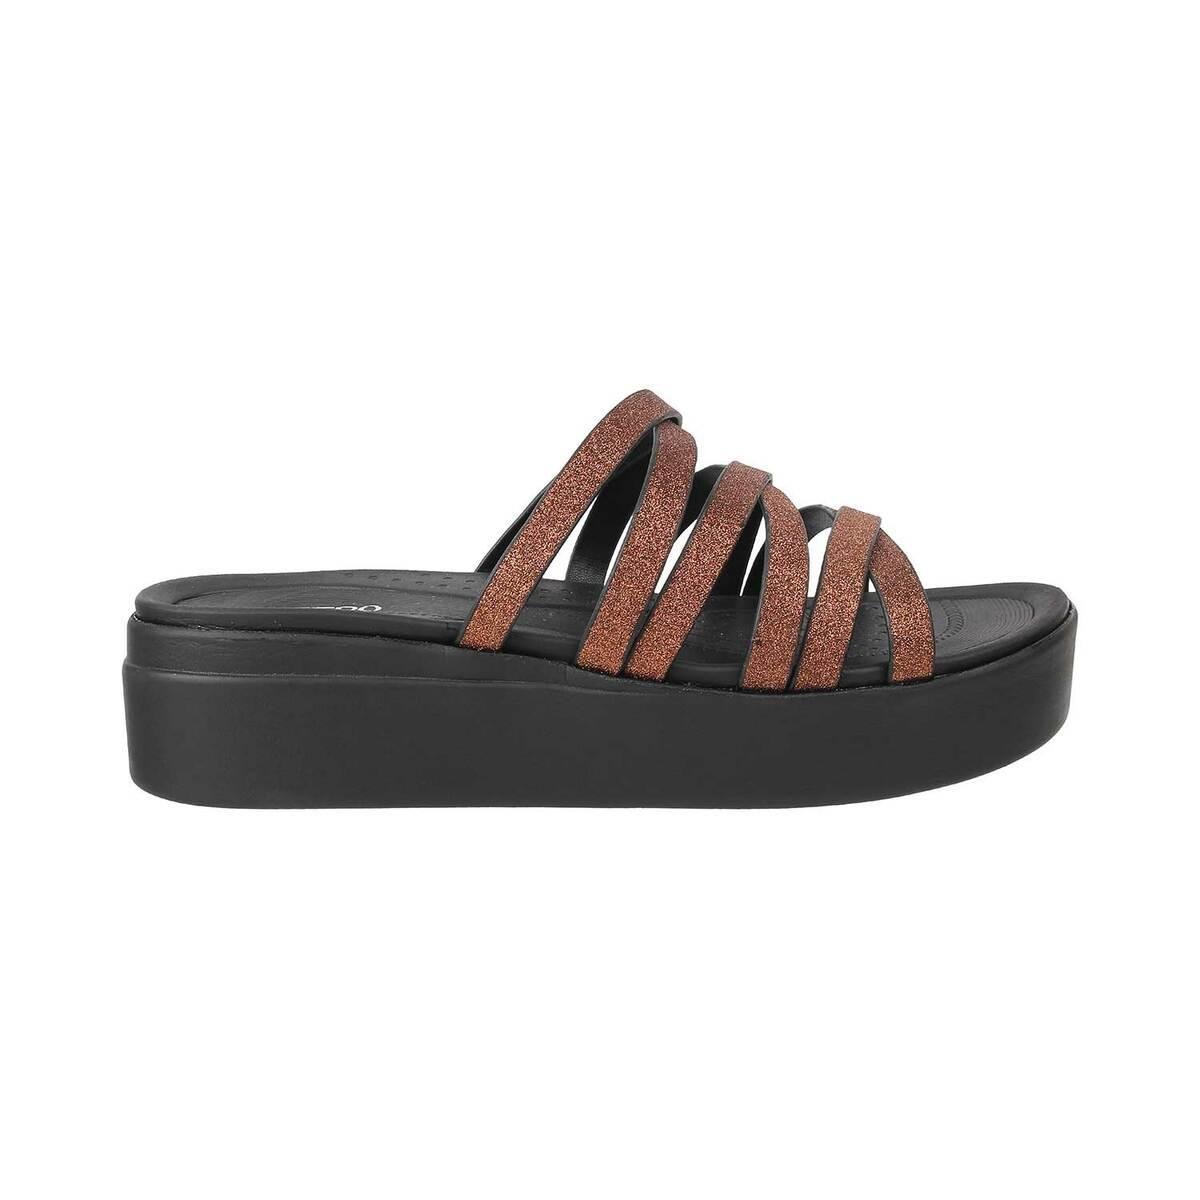 Buy Mochi Women Bronze Casual Sandals Online